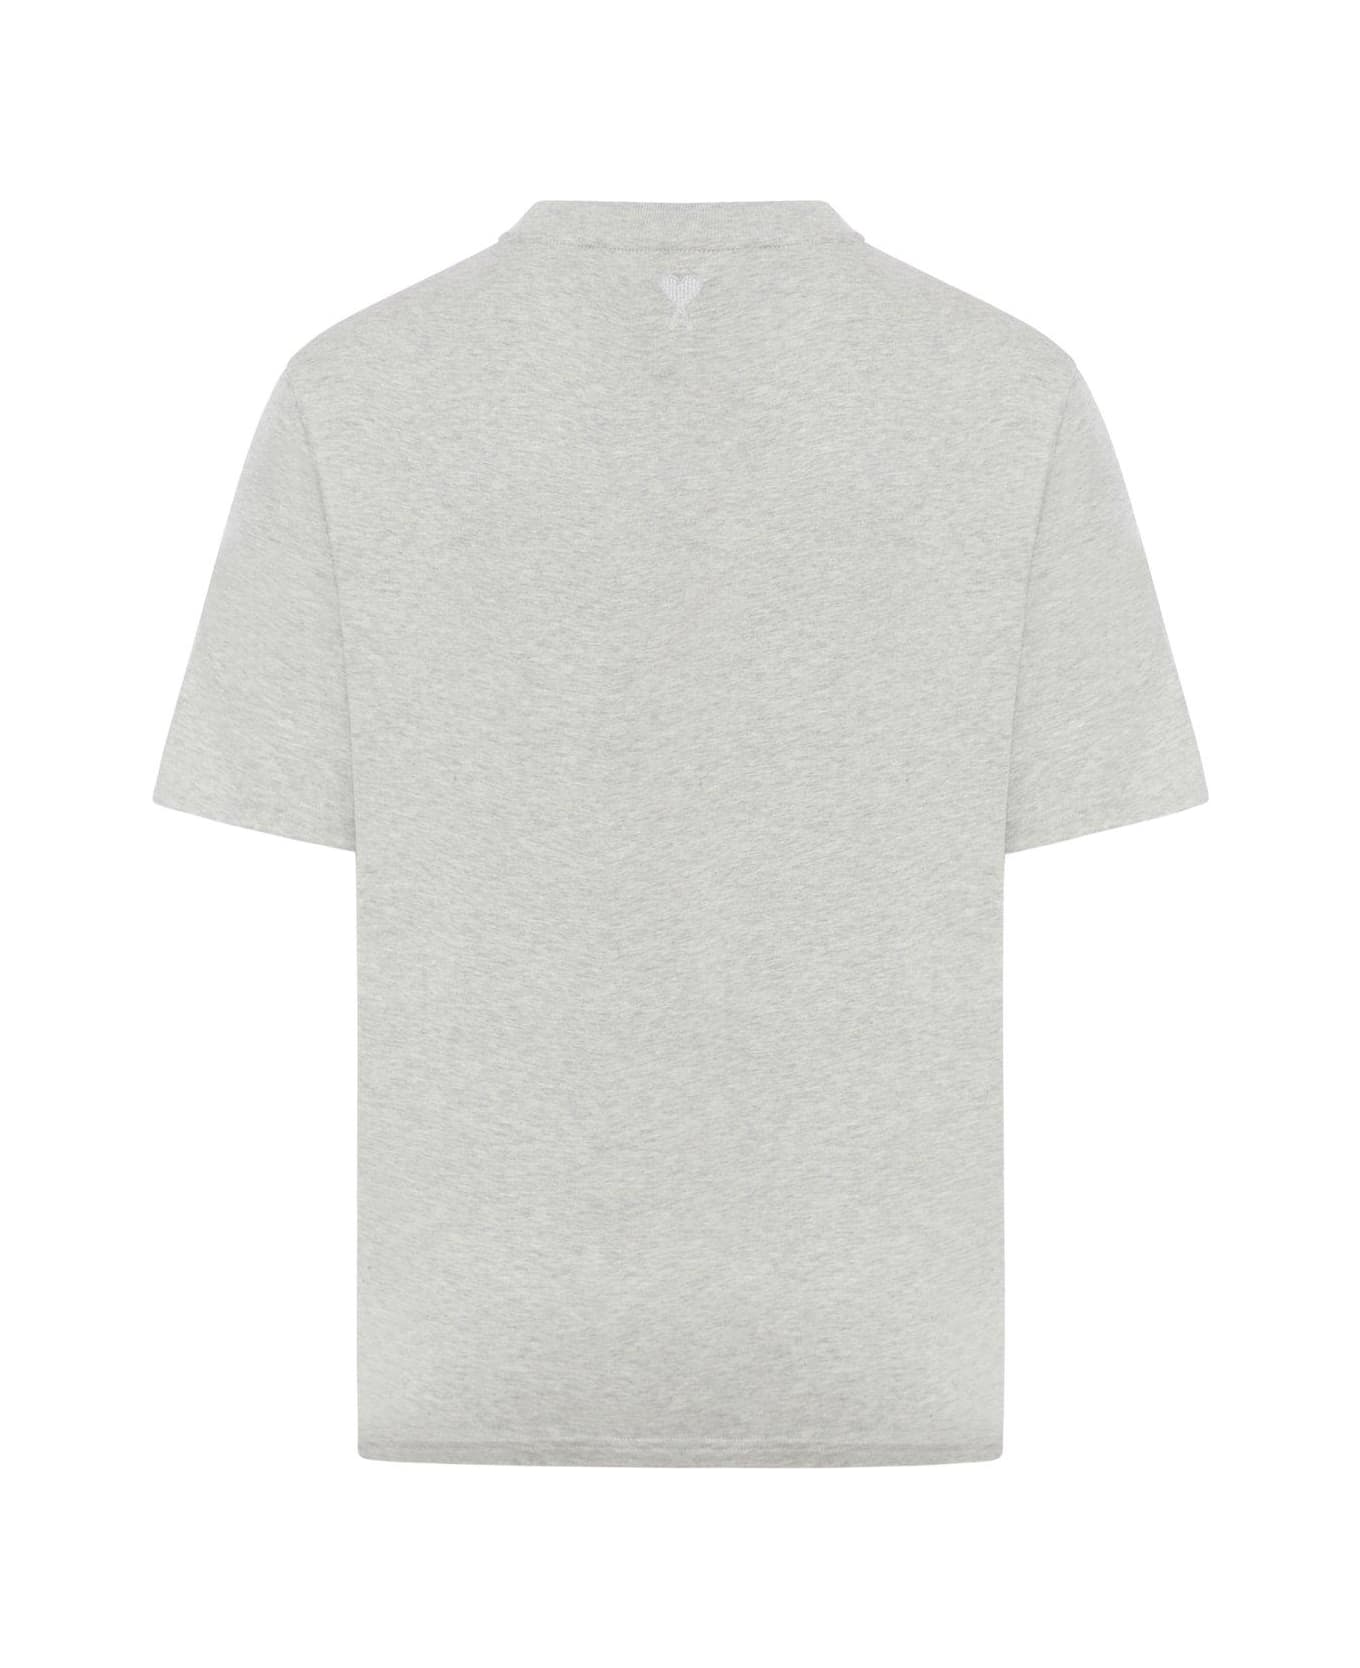 Ami Alexandre Mattiussi Paris Logo Printed Crewneck T-shirt - Grey Tシャツ